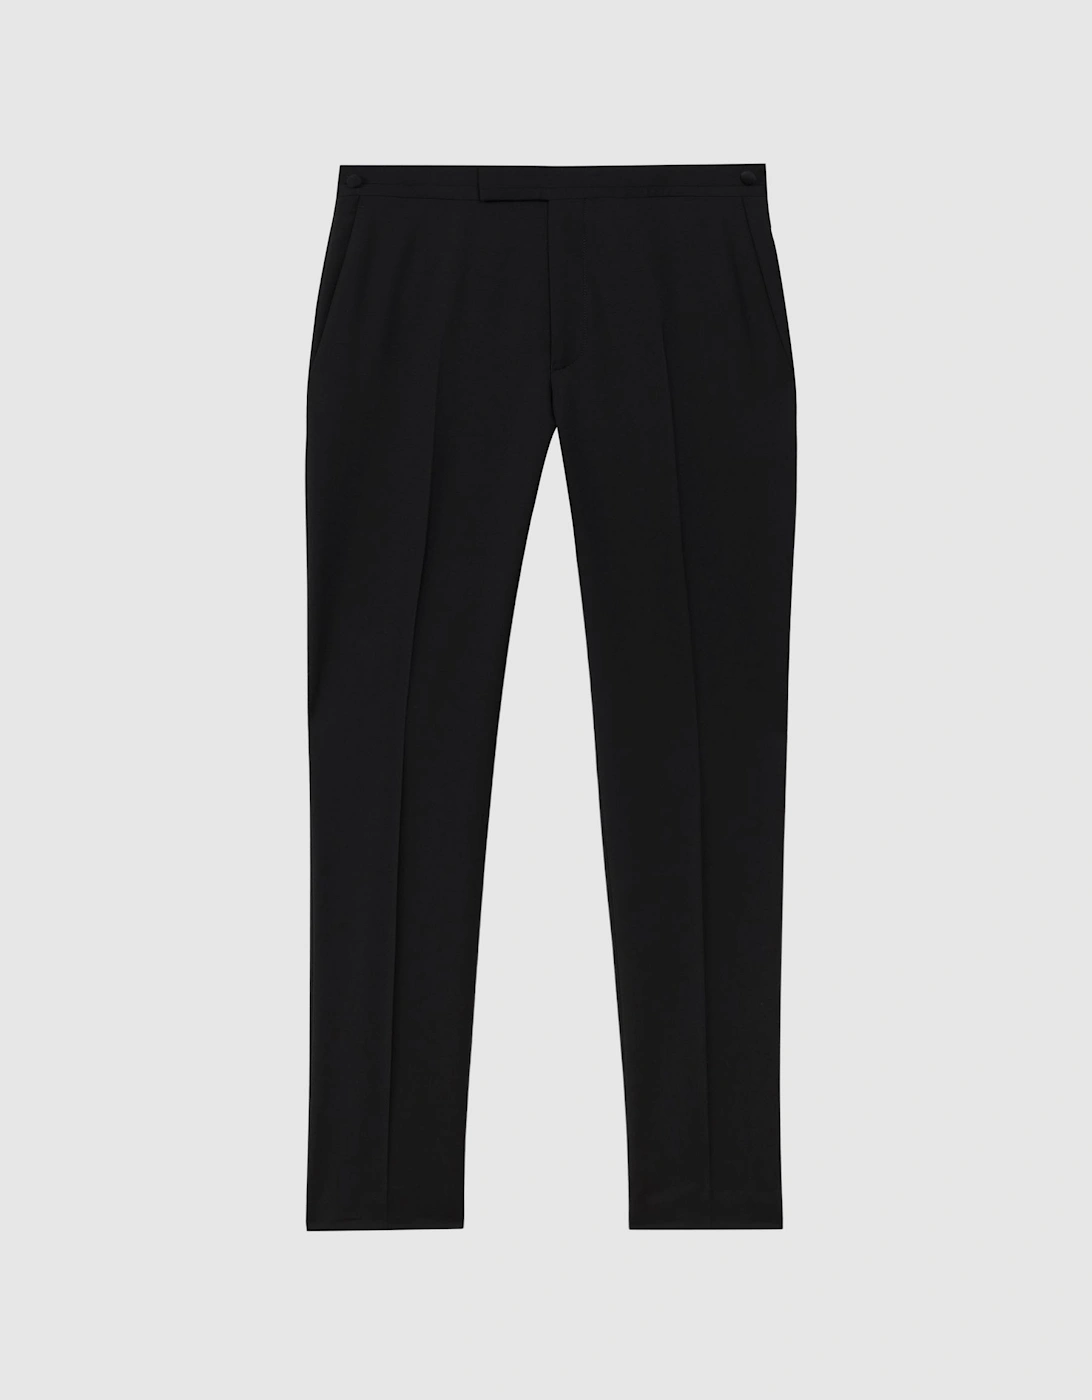 Atelier Wool Blend Slim Fit Tuxedo Trousers, 2 of 1